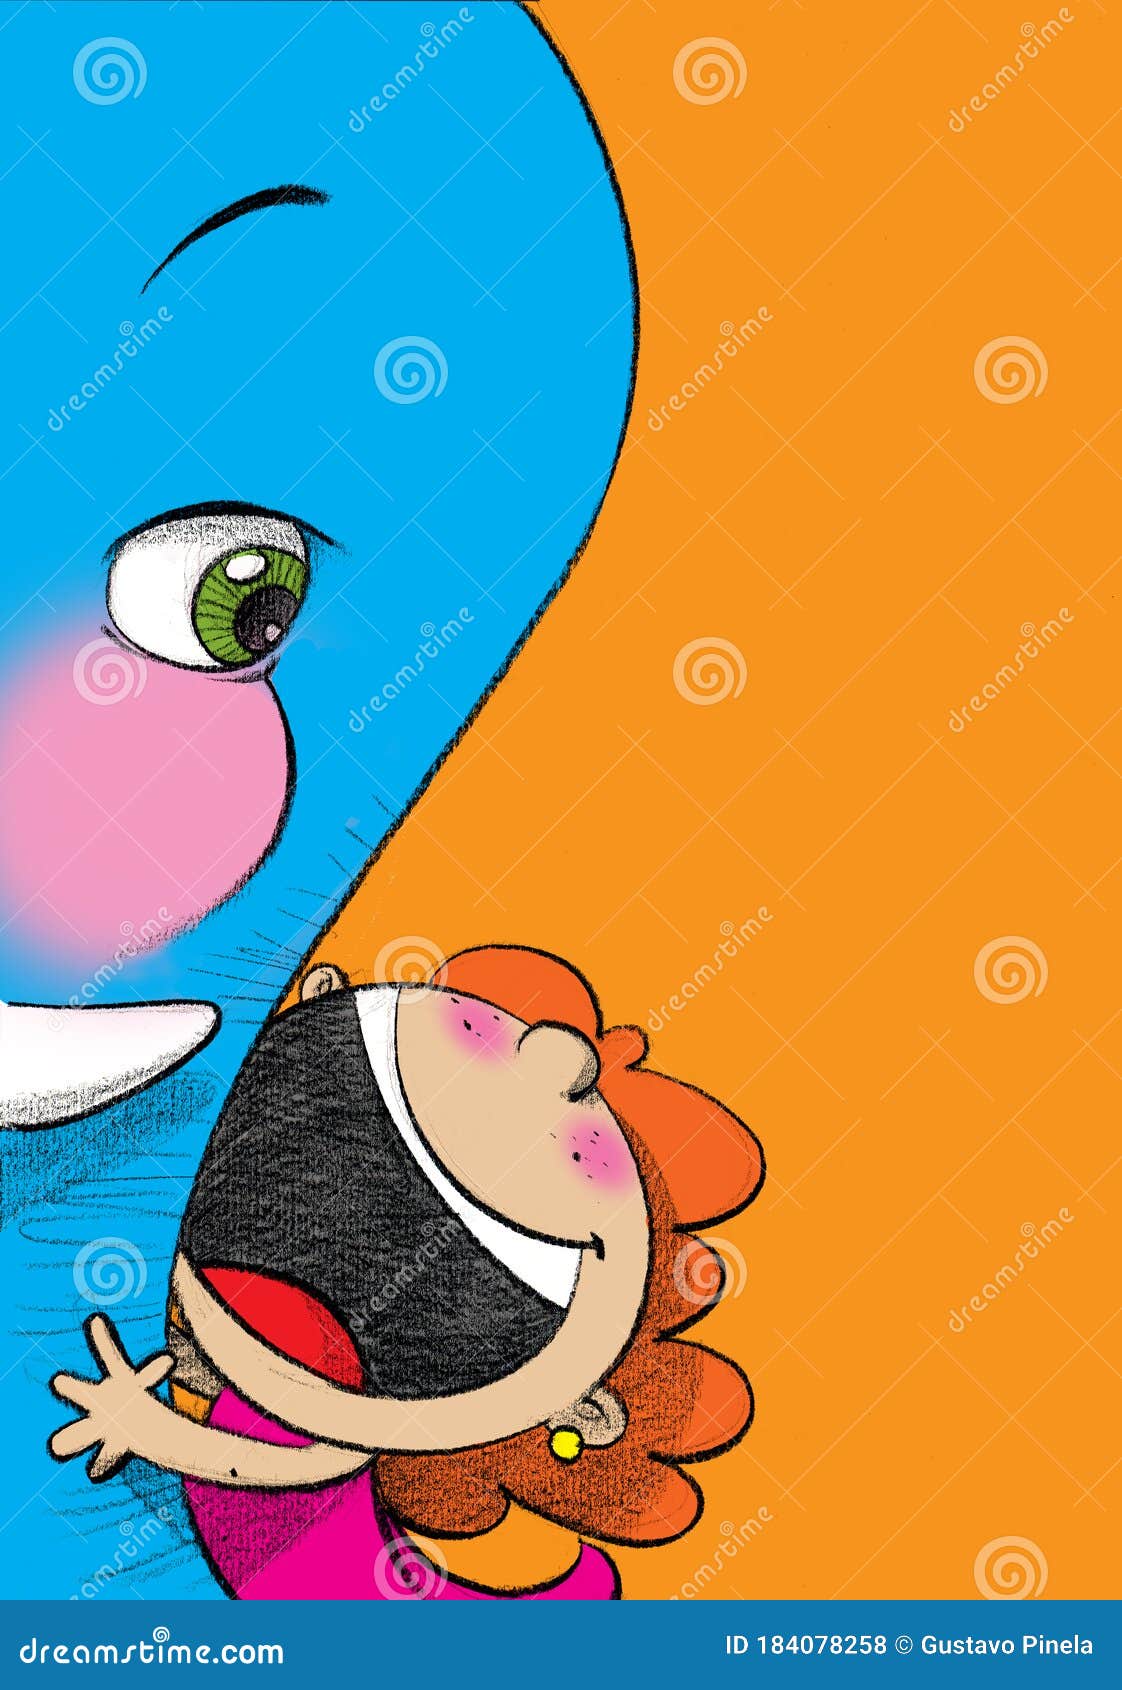 girl caresses and hugs a blue elephant